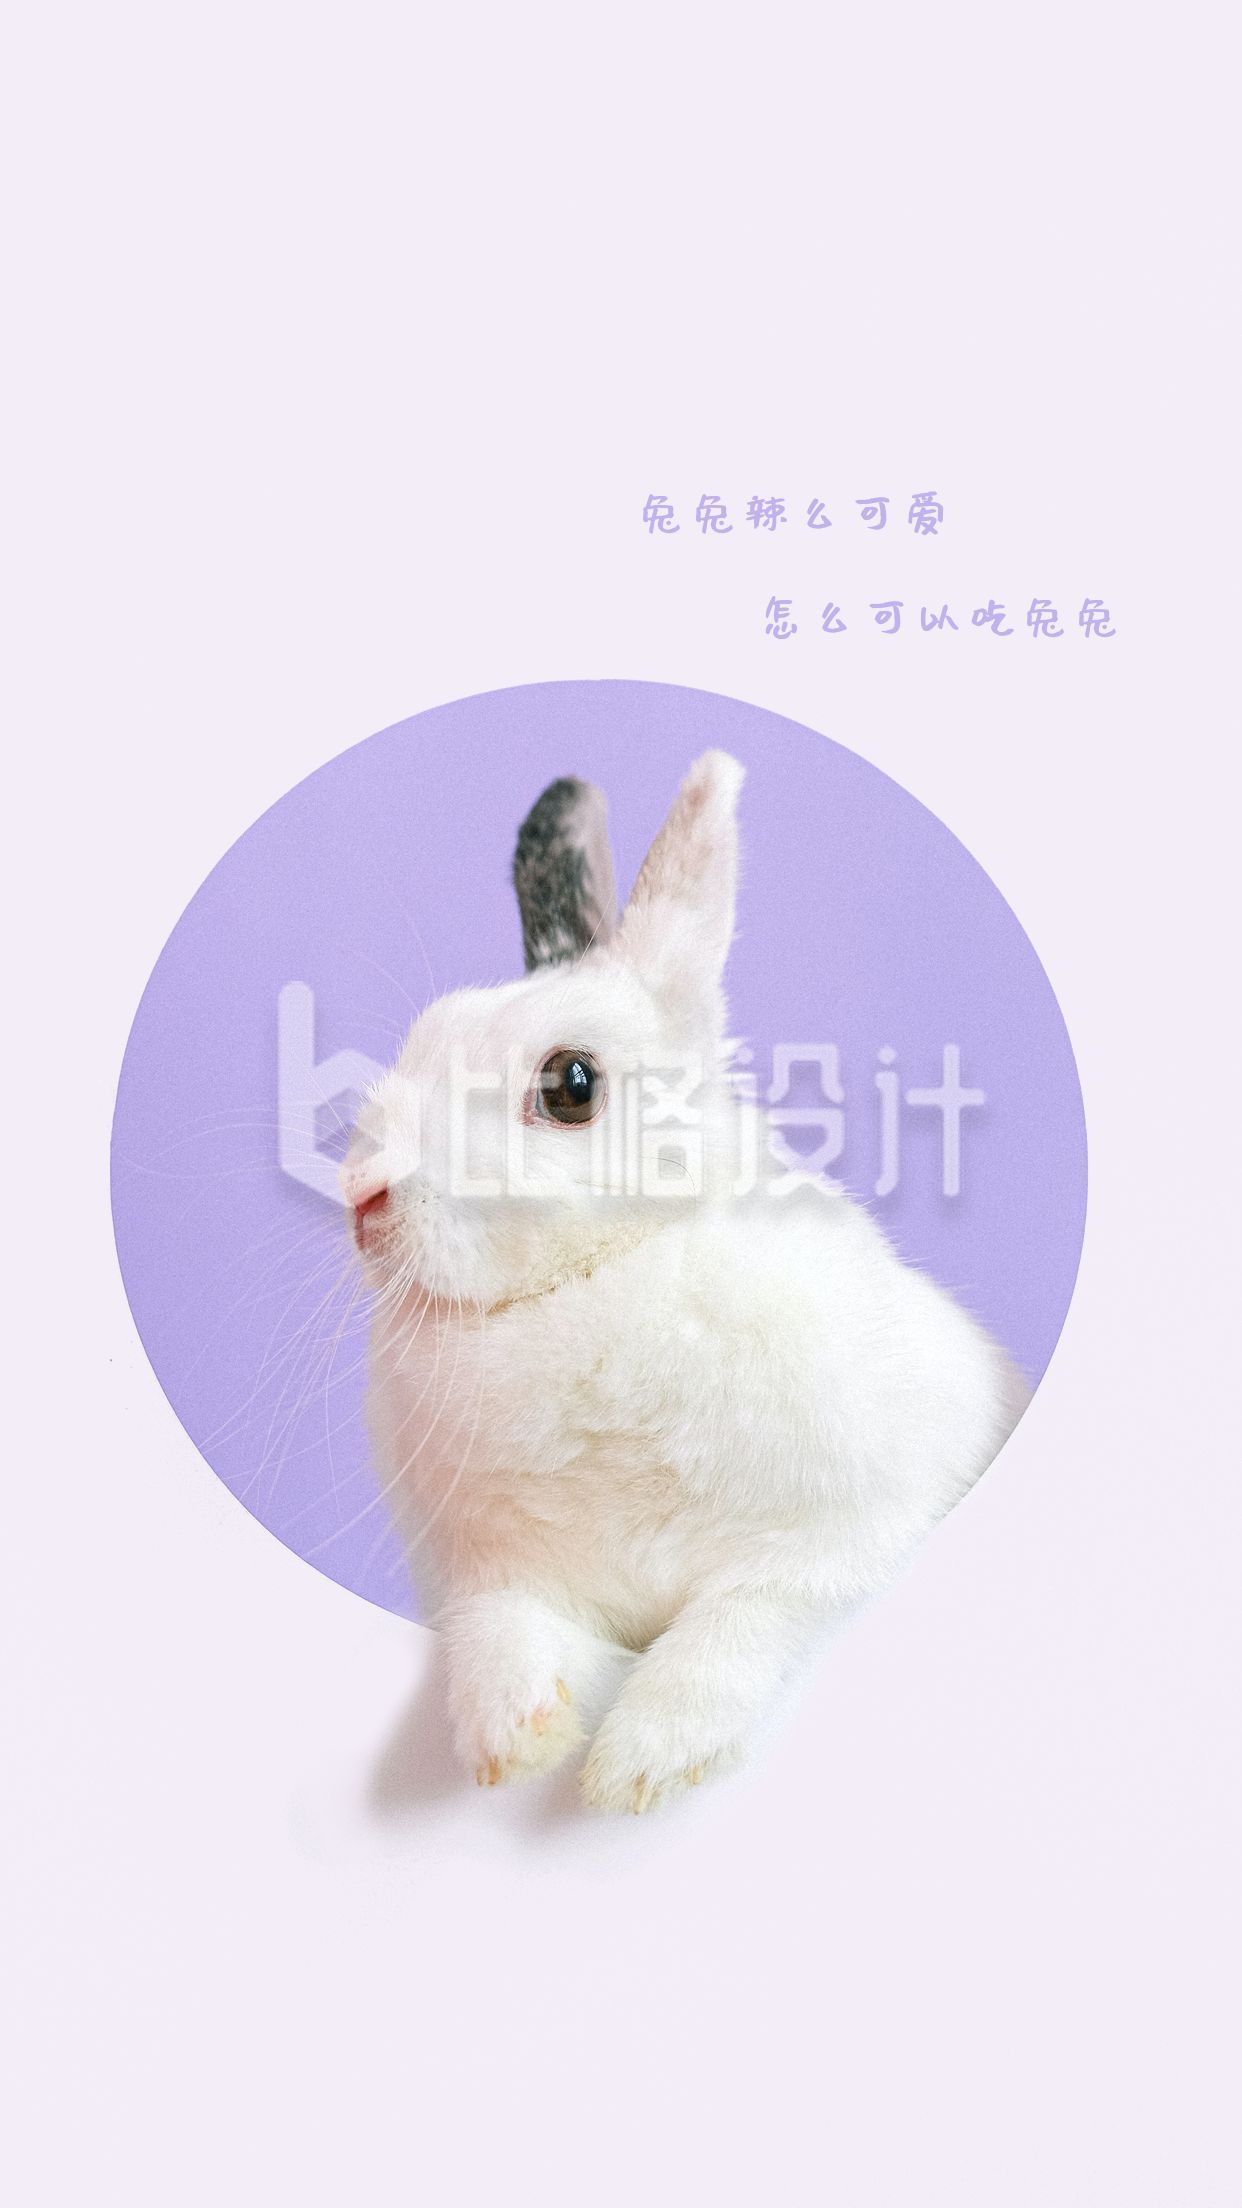 紫色背景可爱小兔子手机壁纸